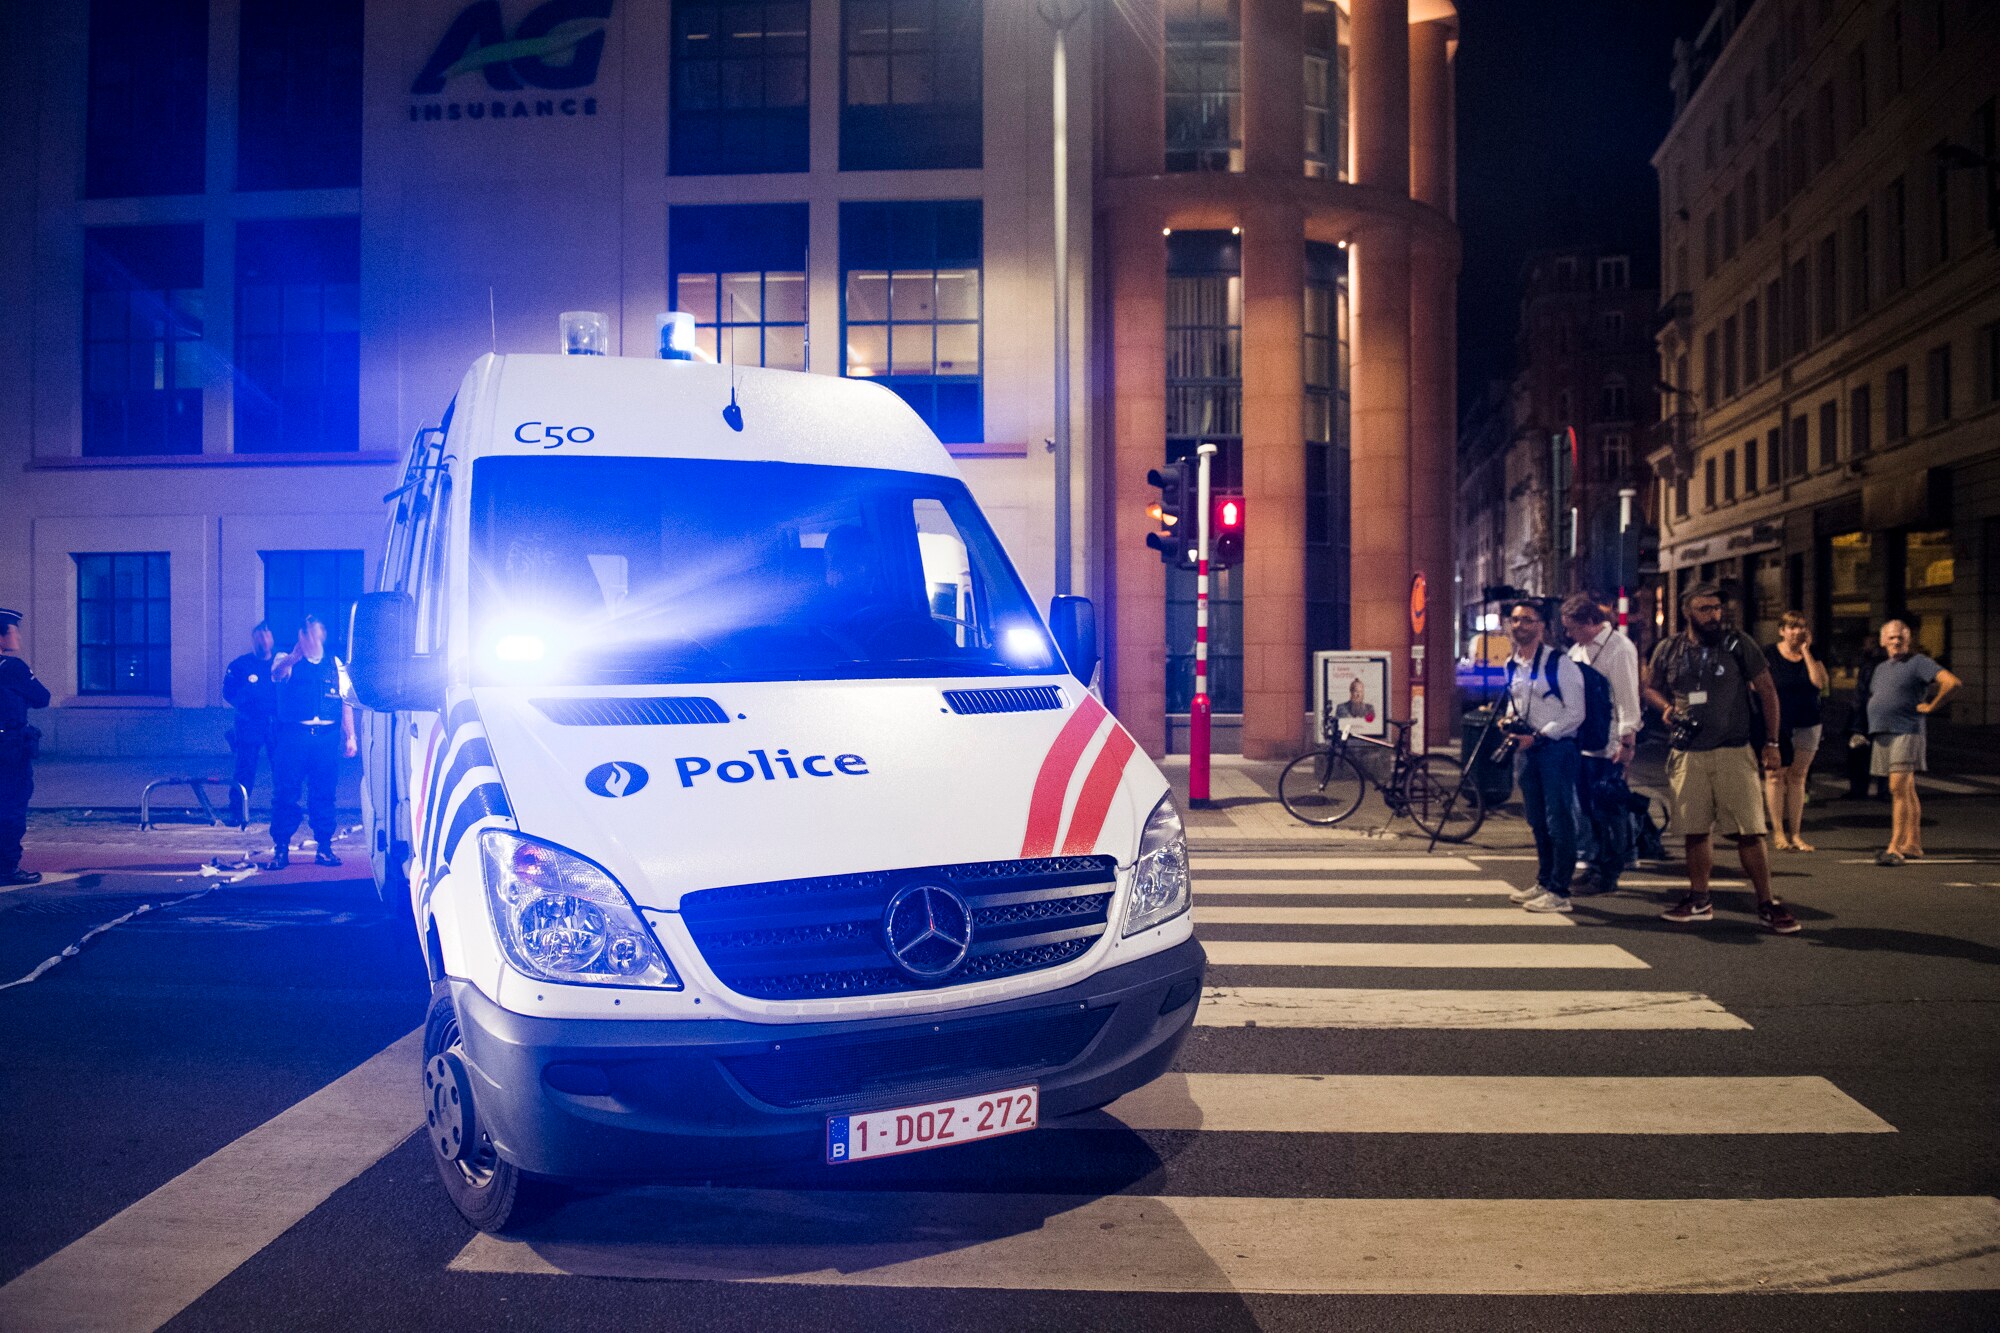 Lange asielprocedure leverde aanvaller Brussel regularisatie op